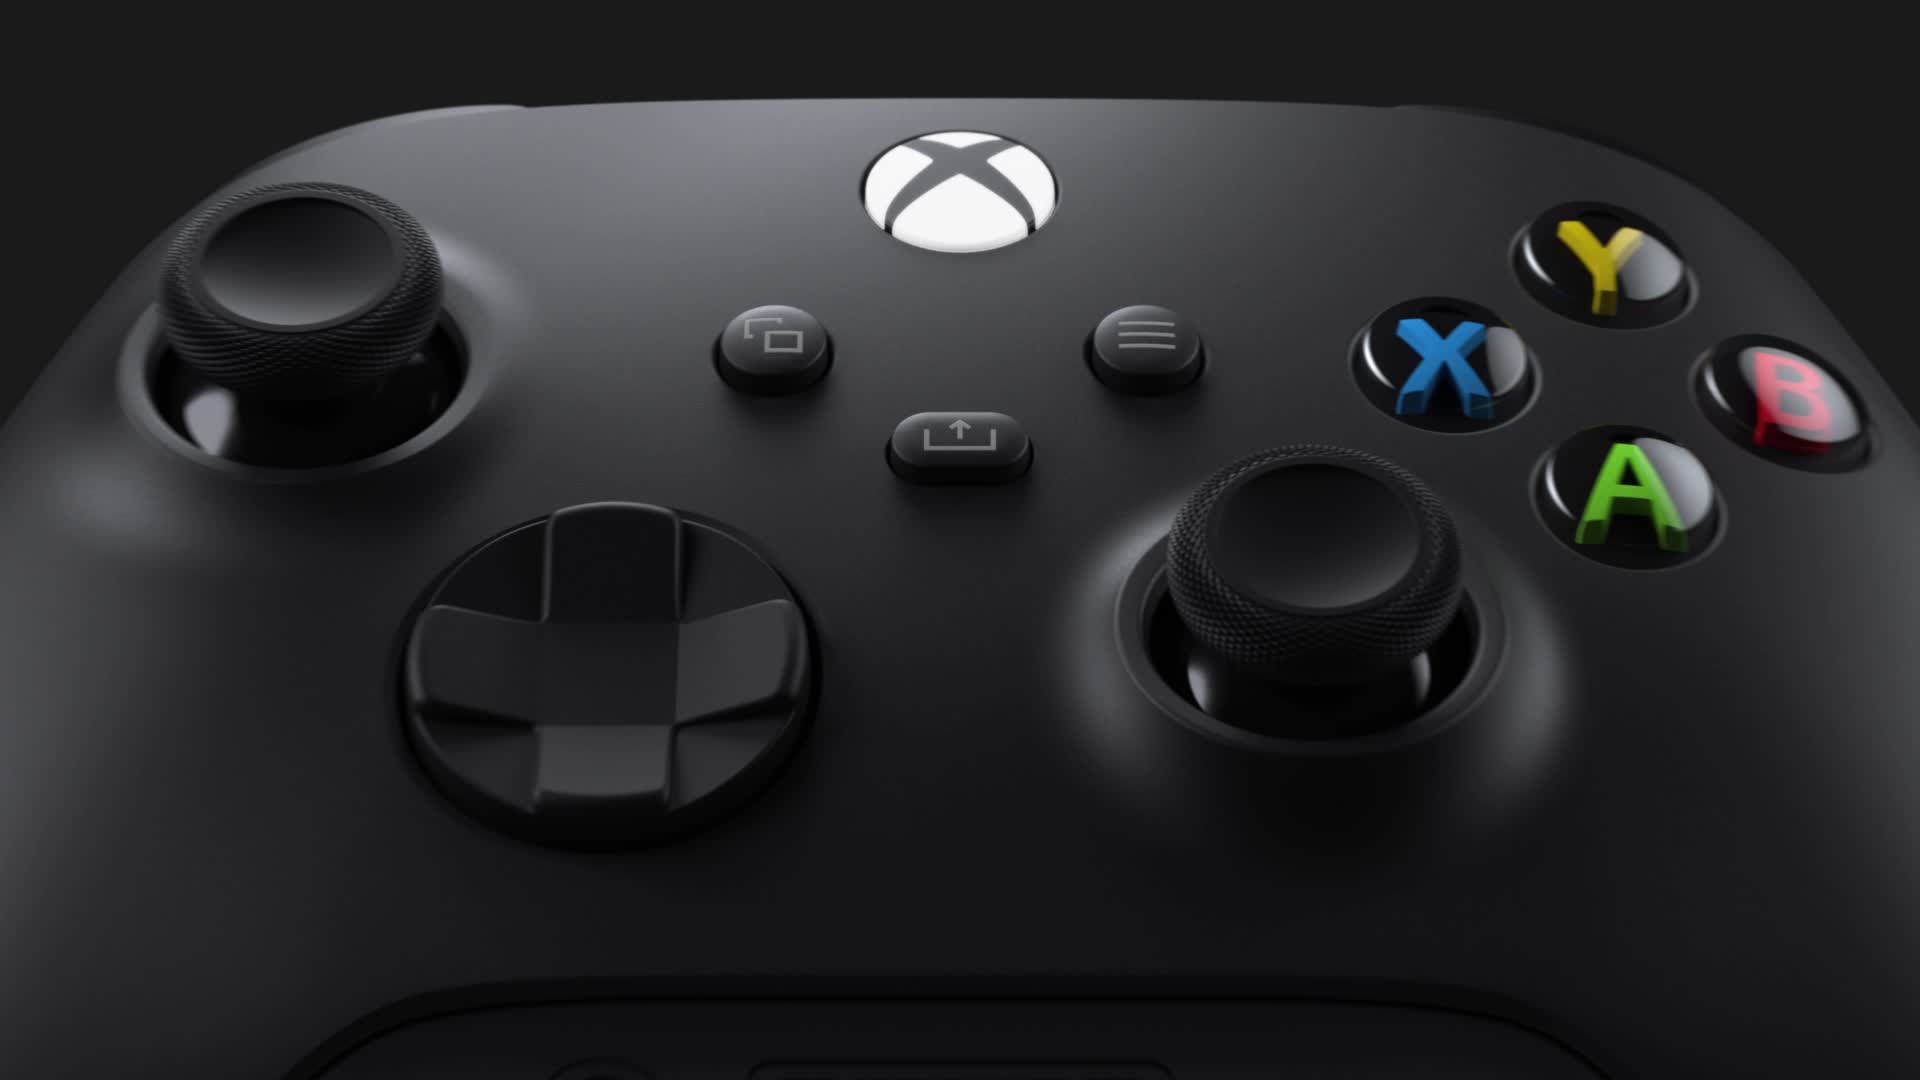 GTA 5 tendrá tres modos gráficos en PS5 y Xbox Series X/S - Vandal